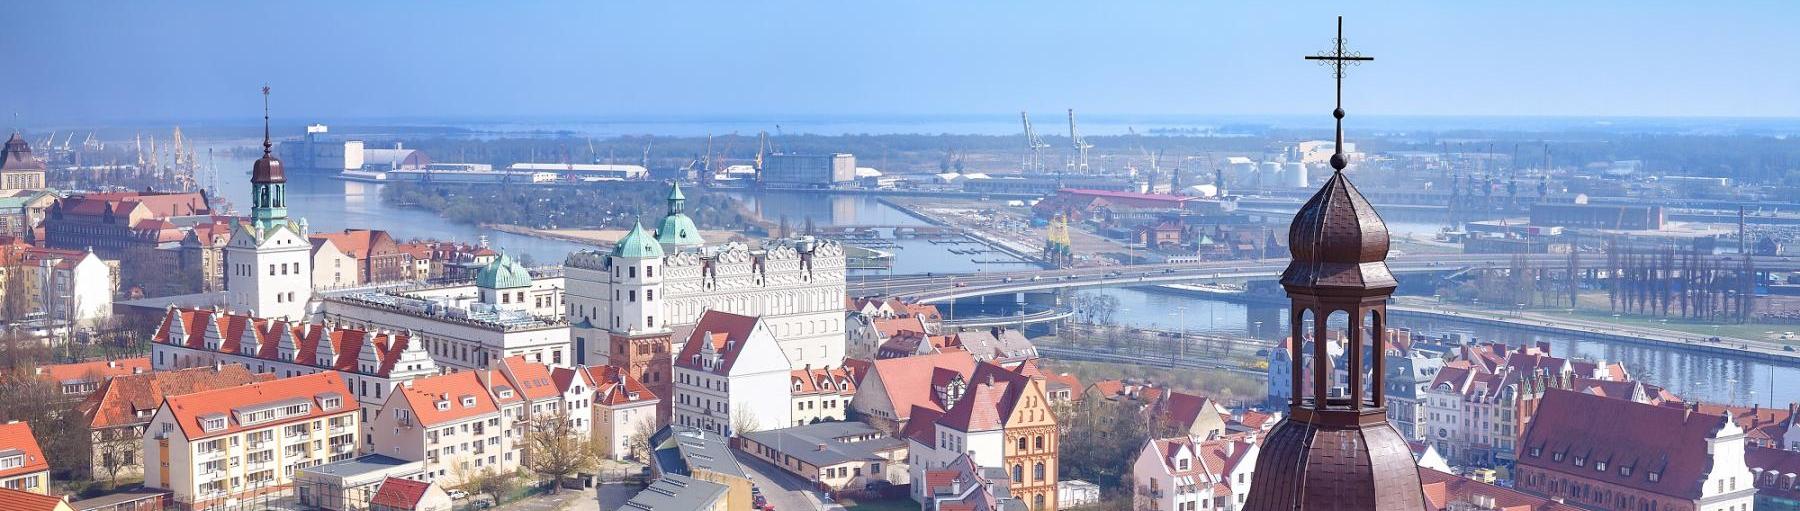 Szczecin to siódme polskie miasto pod względem liczby mieszkańców - jest ich 405 657 (dane GUS z 31.12.2015 r.). Fot. Shutterstock